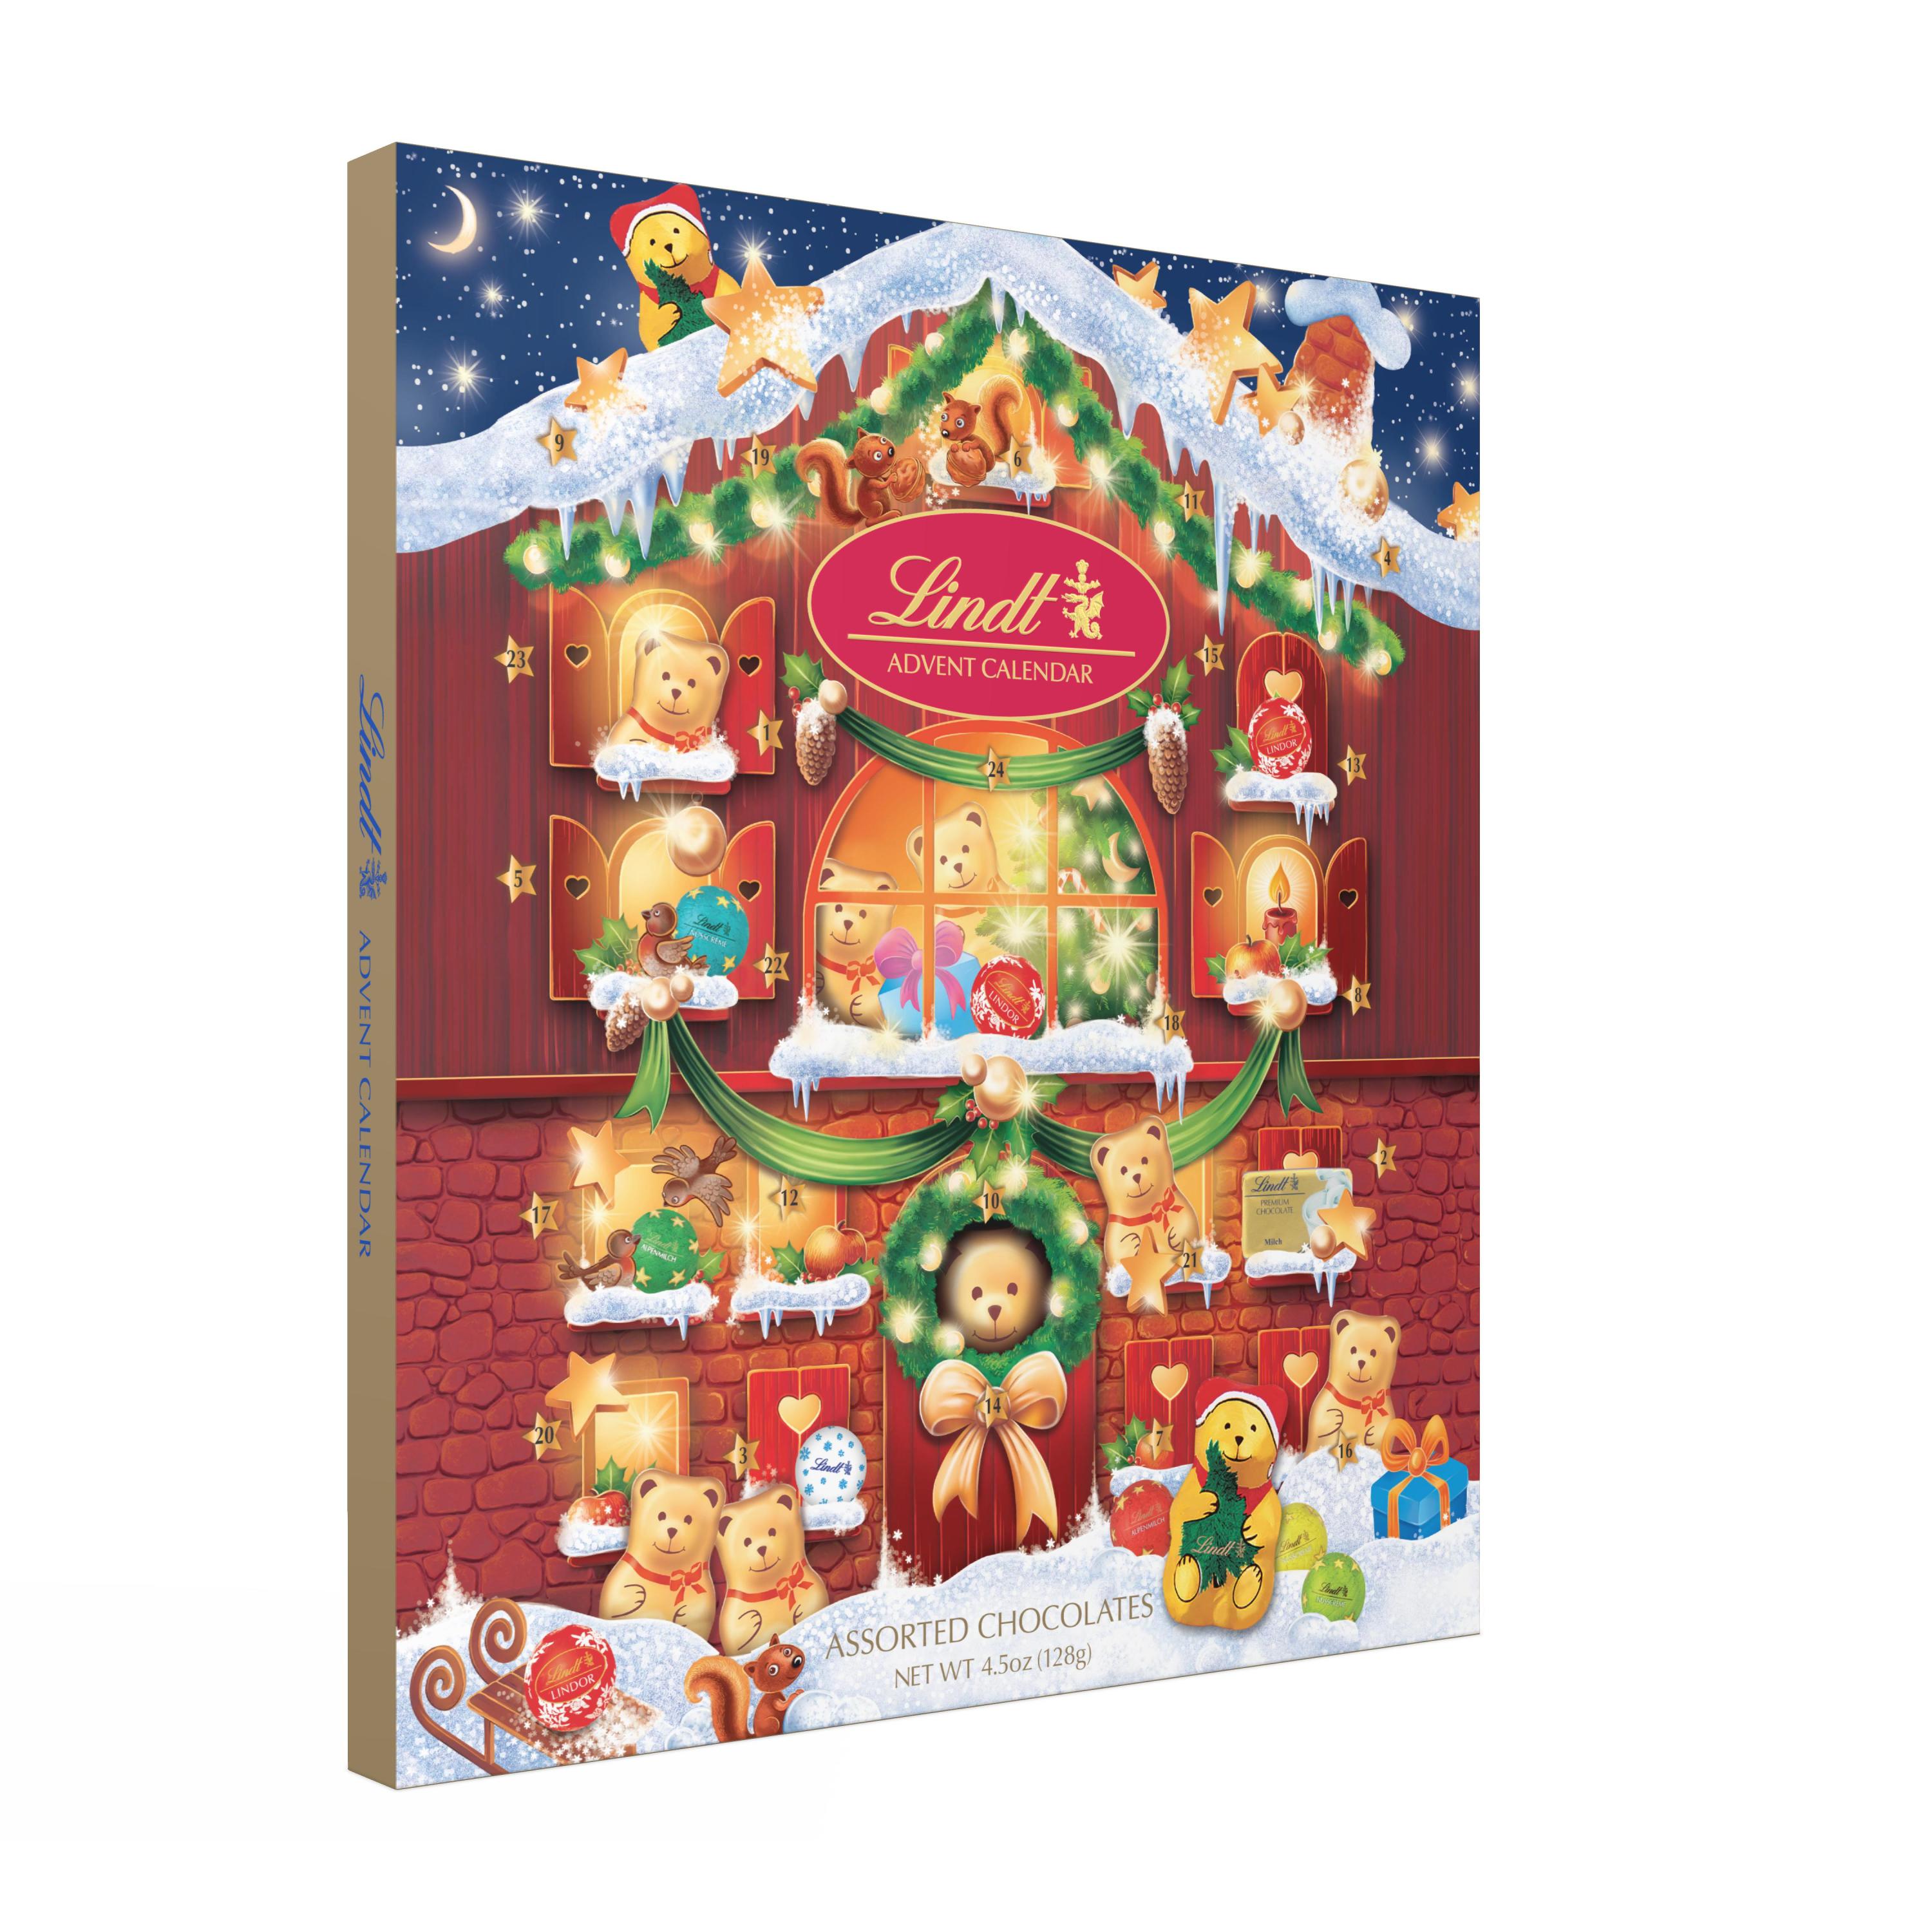 Lindt Holiday Chocolate Teddy Bear Advent Calendar, 4.5 oz.